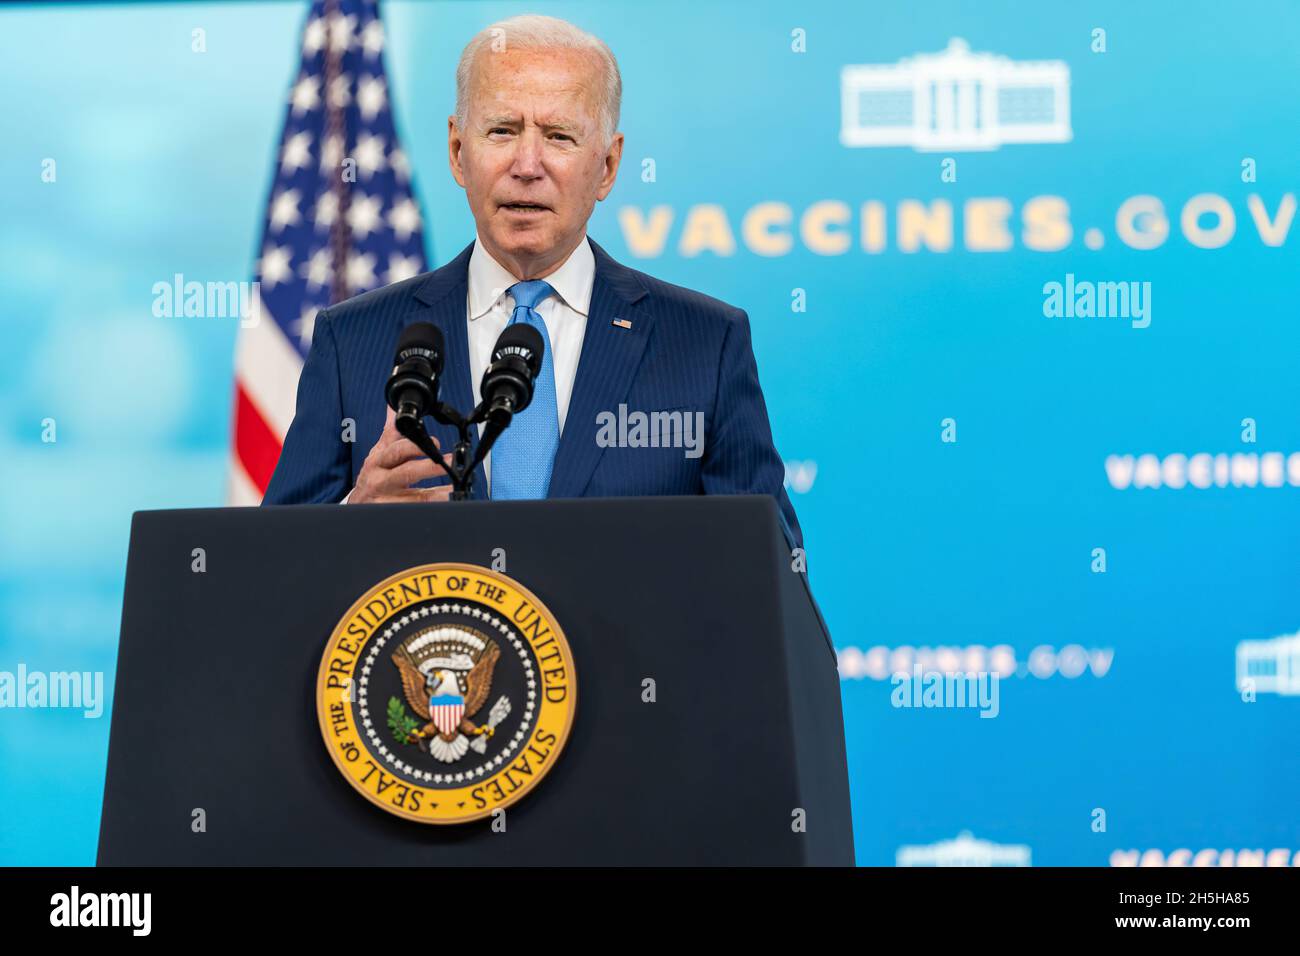 Il Presidente Joe Biden presenta osservazioni sulla FDA che dà piena approvazione al vaccino Pfizer COVID-19, lunedì 23 agosto 2021, nell'Auditorium della Corte Sud nell'edificio Eisenhower Executive Office presso la Casa Bianca. (Foto ufficiale della Casa Bianca di Adam Schultz) Foto Stock